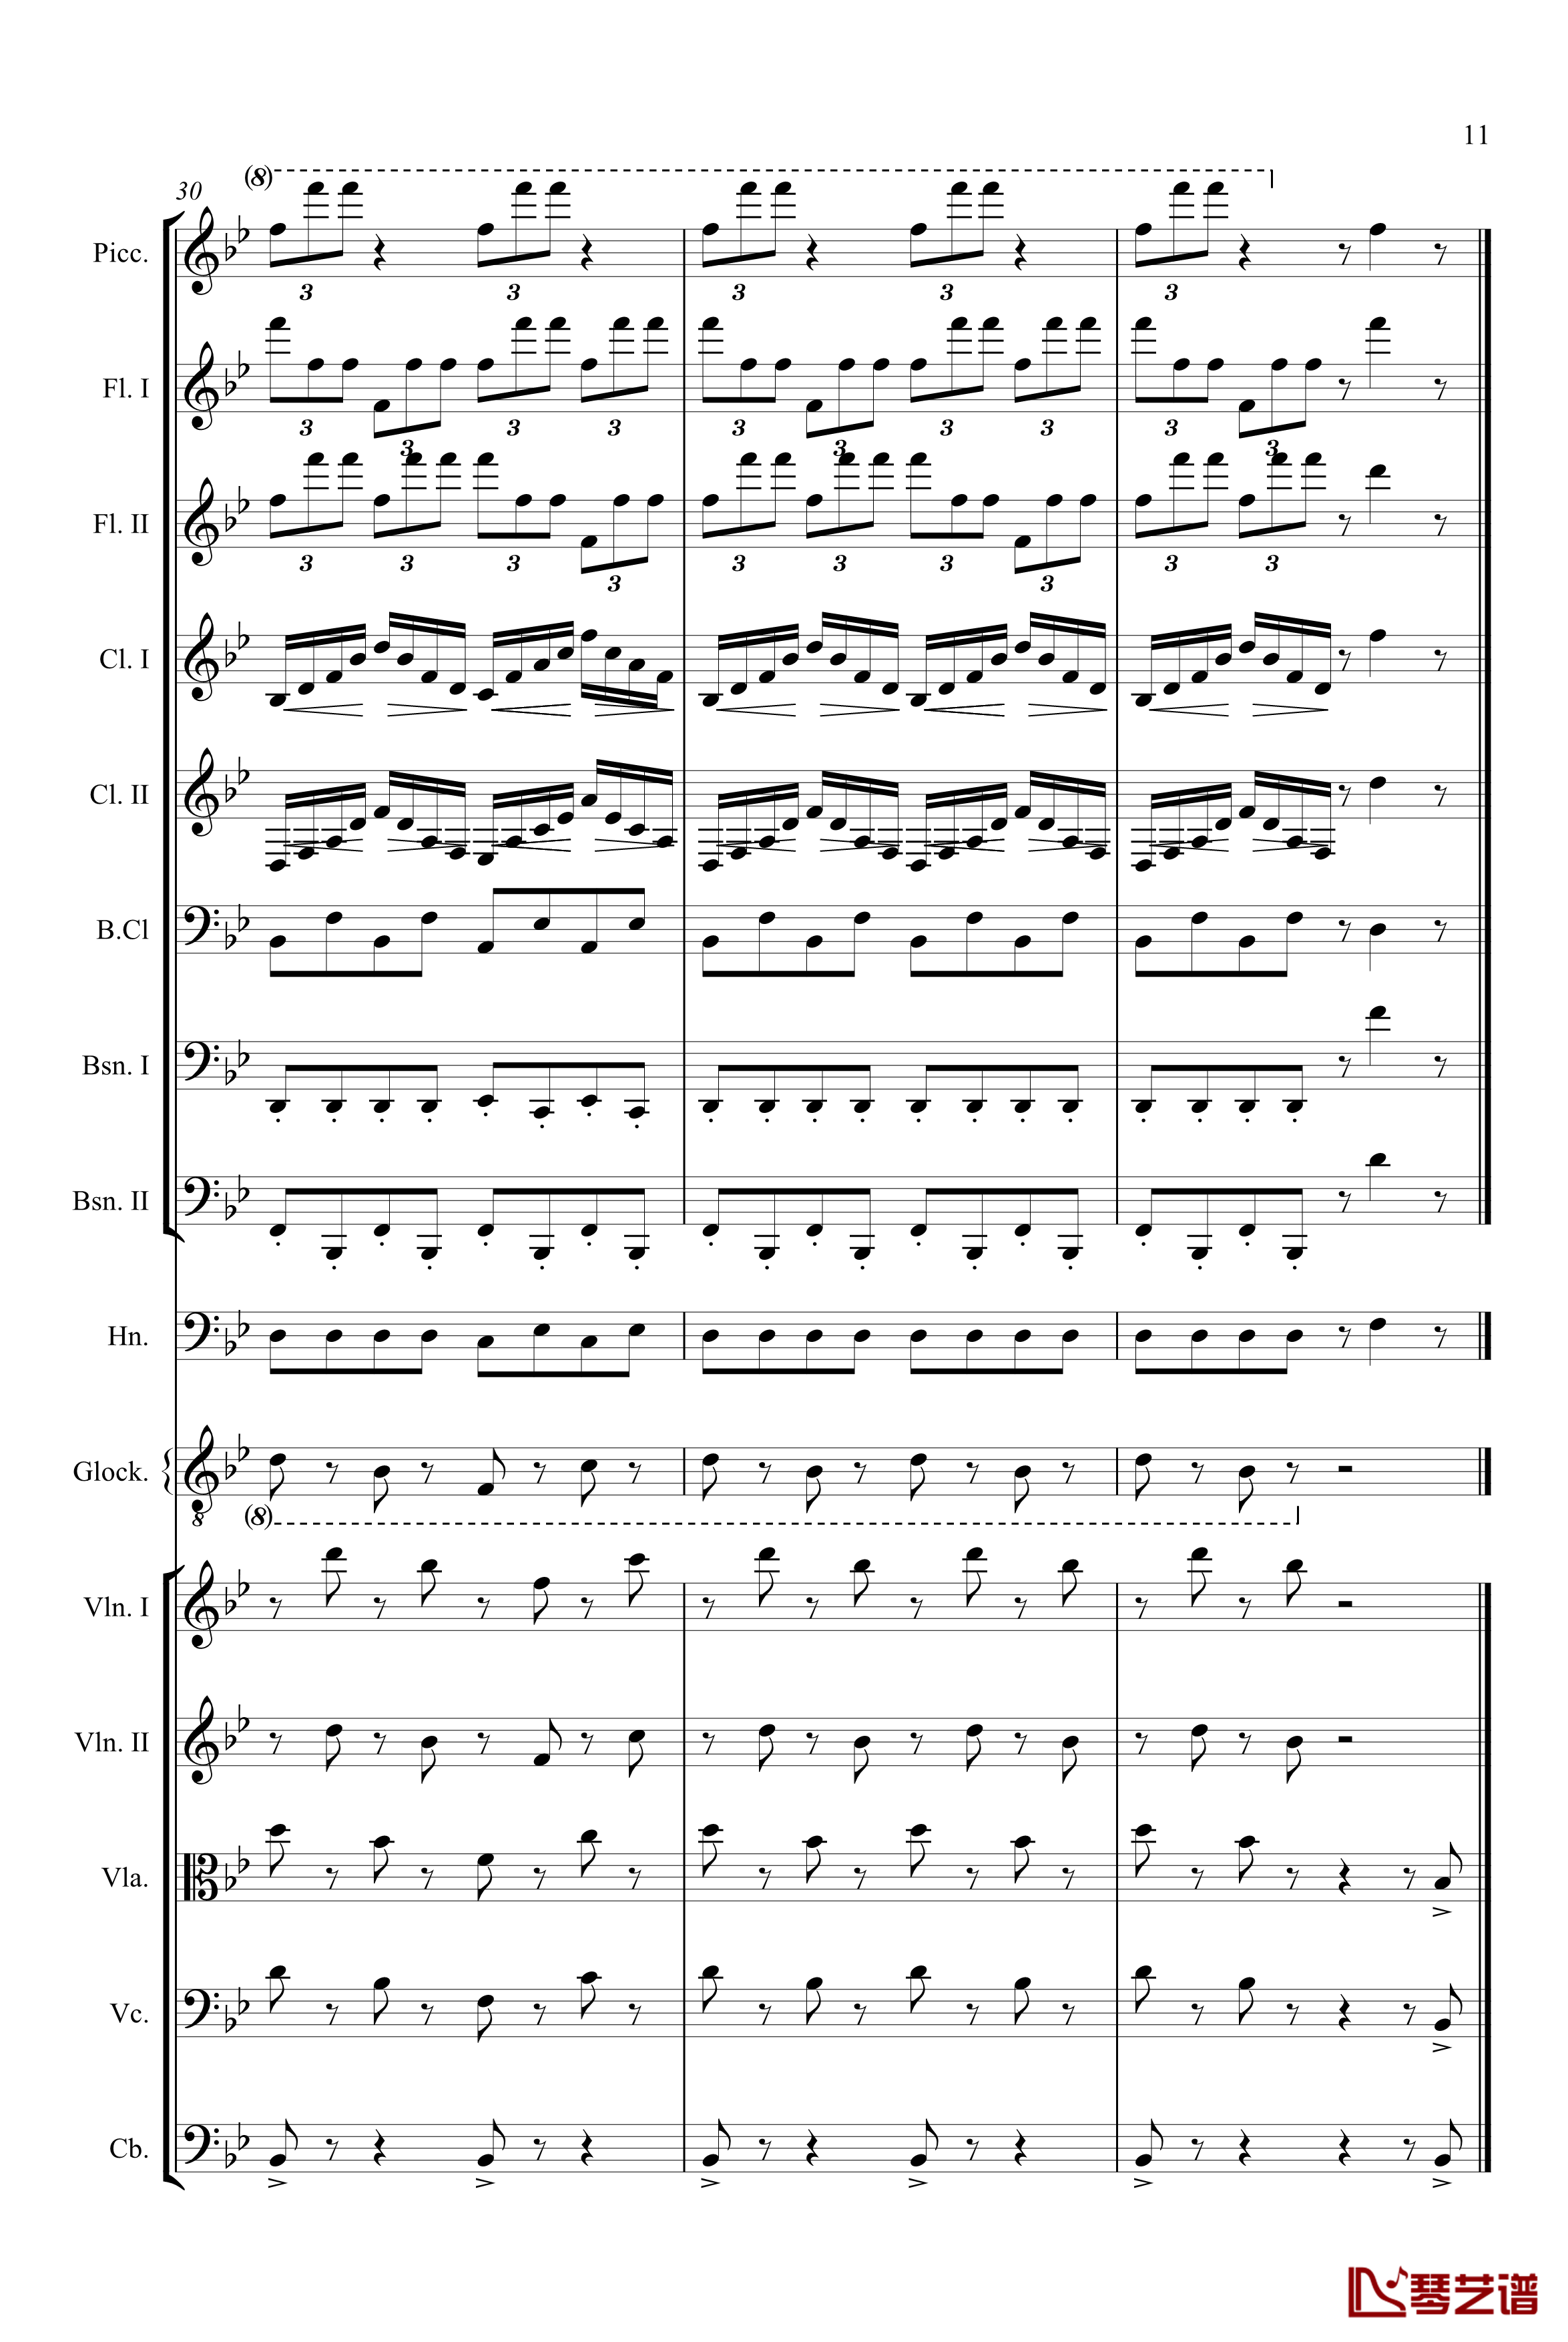 胡桃夹子组曲茶钢琴谱-柴科夫斯基-Peter Ilyich Tchaikovsky11